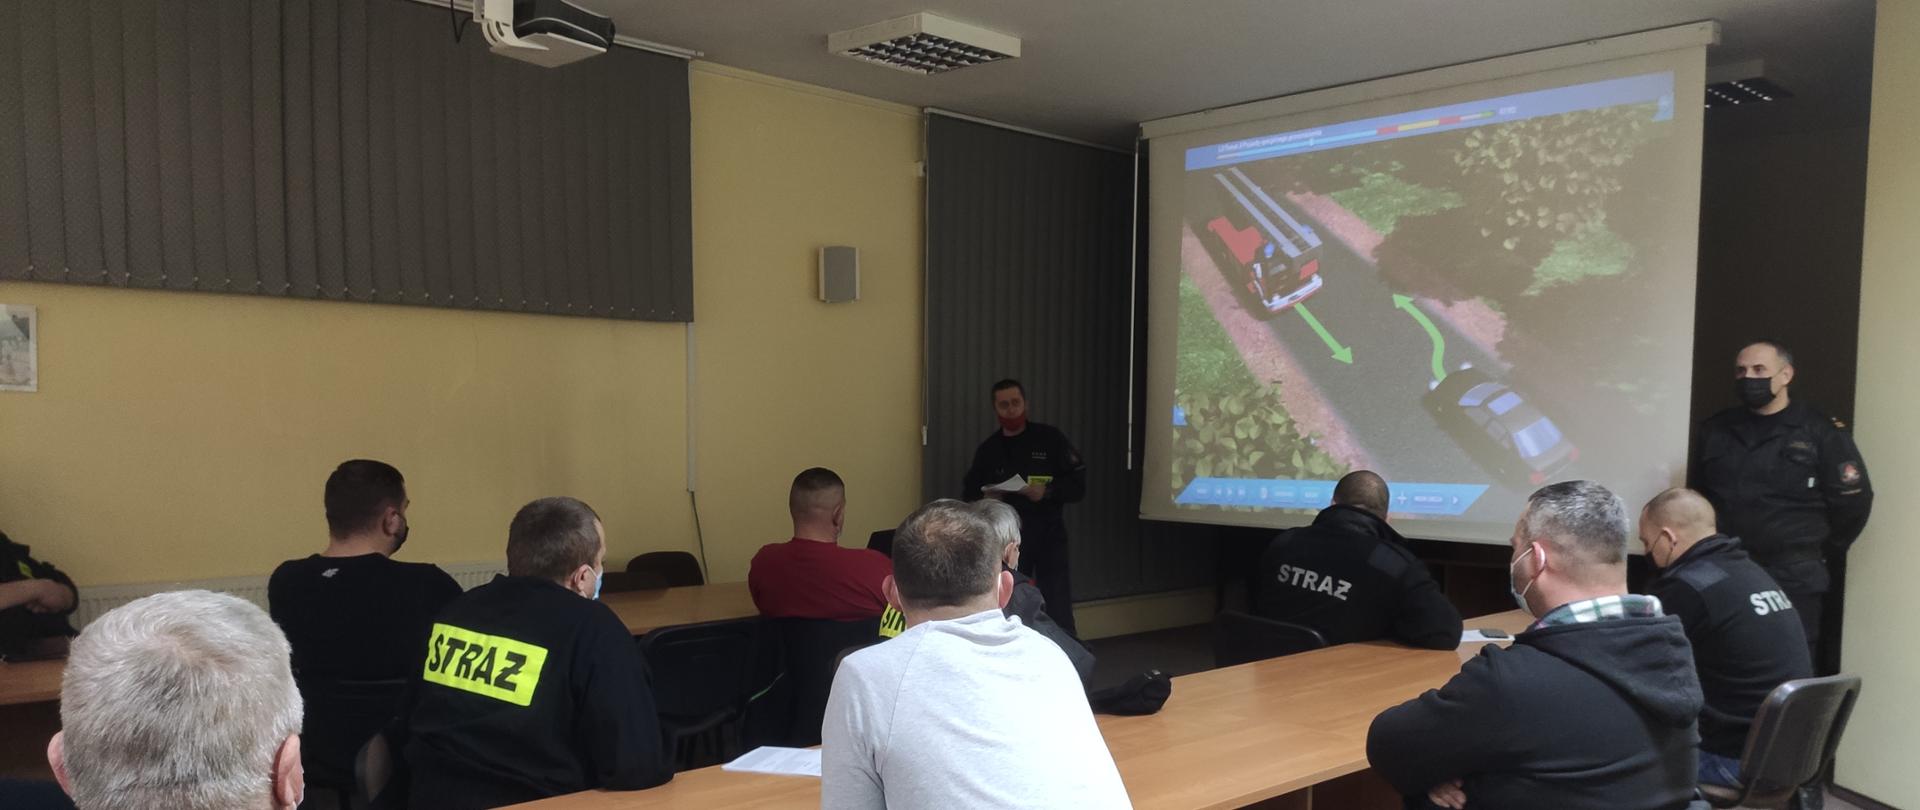 Instruktor jazdy z Ośrodka Szkolenia Kierowców w Skierniewicach przeprowadza szkolenie dla naczelników oraz kierowców OSP omawia kwestie zasad bhp eksploatacji pojazdów oraz przepisów bezpieczeństwa ruchu drogowego. Naczelnicy i kierowcy OSP uważnie słuchają prelekcji.